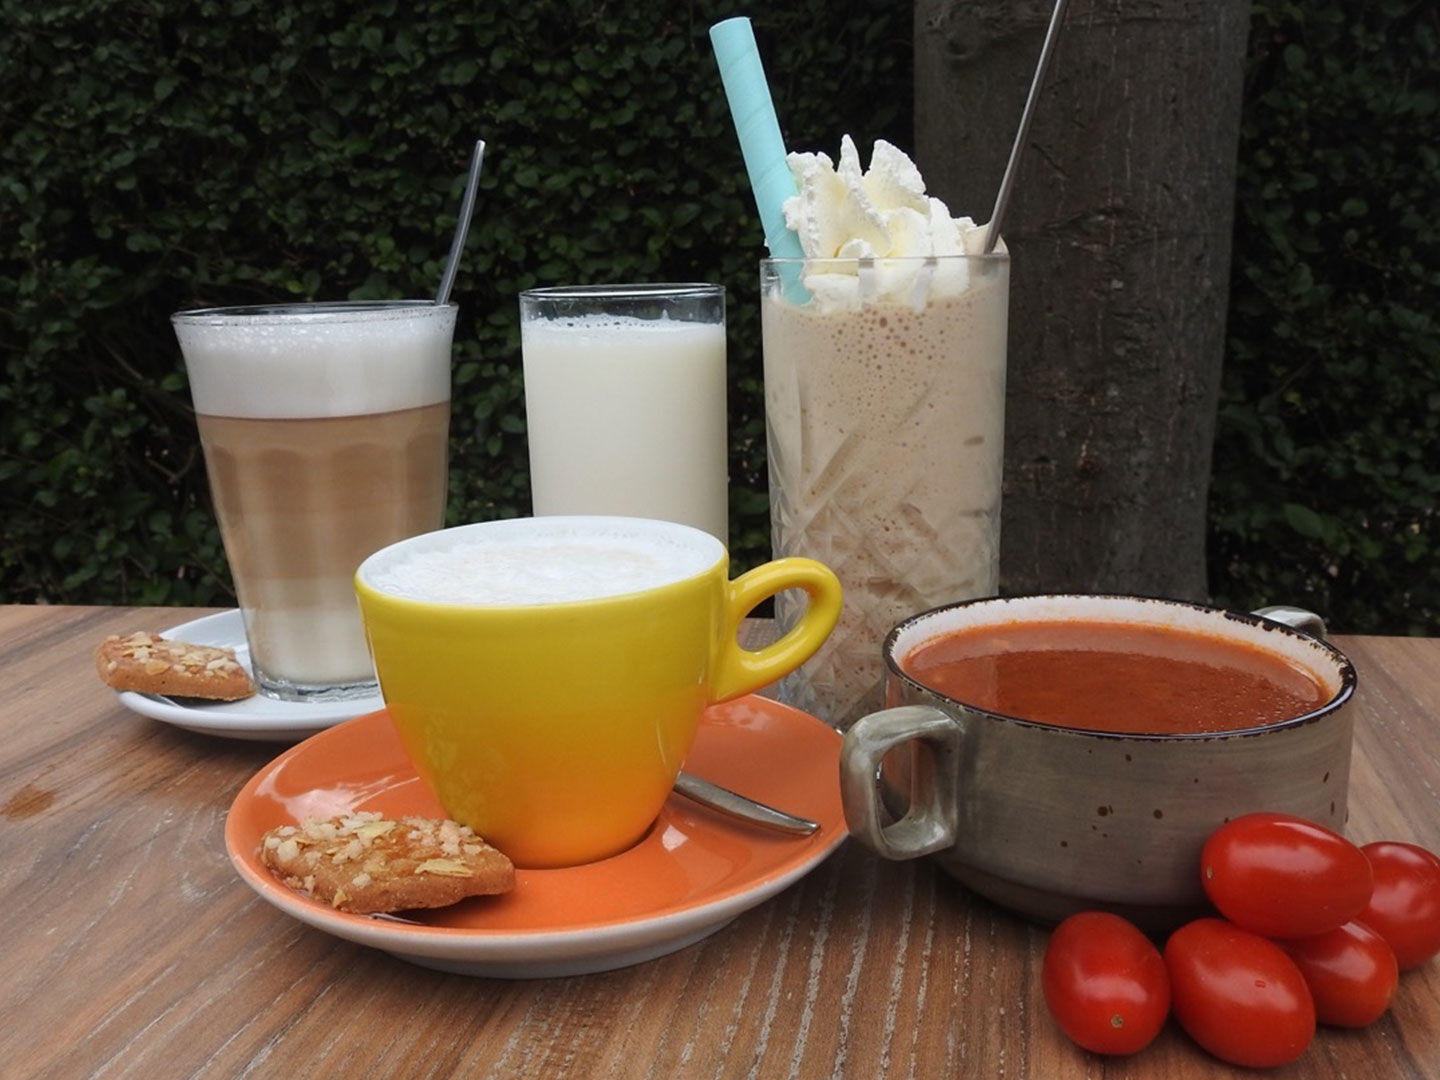 Robin van Vliet van koffiehuis de Hooiberg in Midden-Delfland koffies en tomatensoep op tafel met streekproducten uit Midden-Delfland